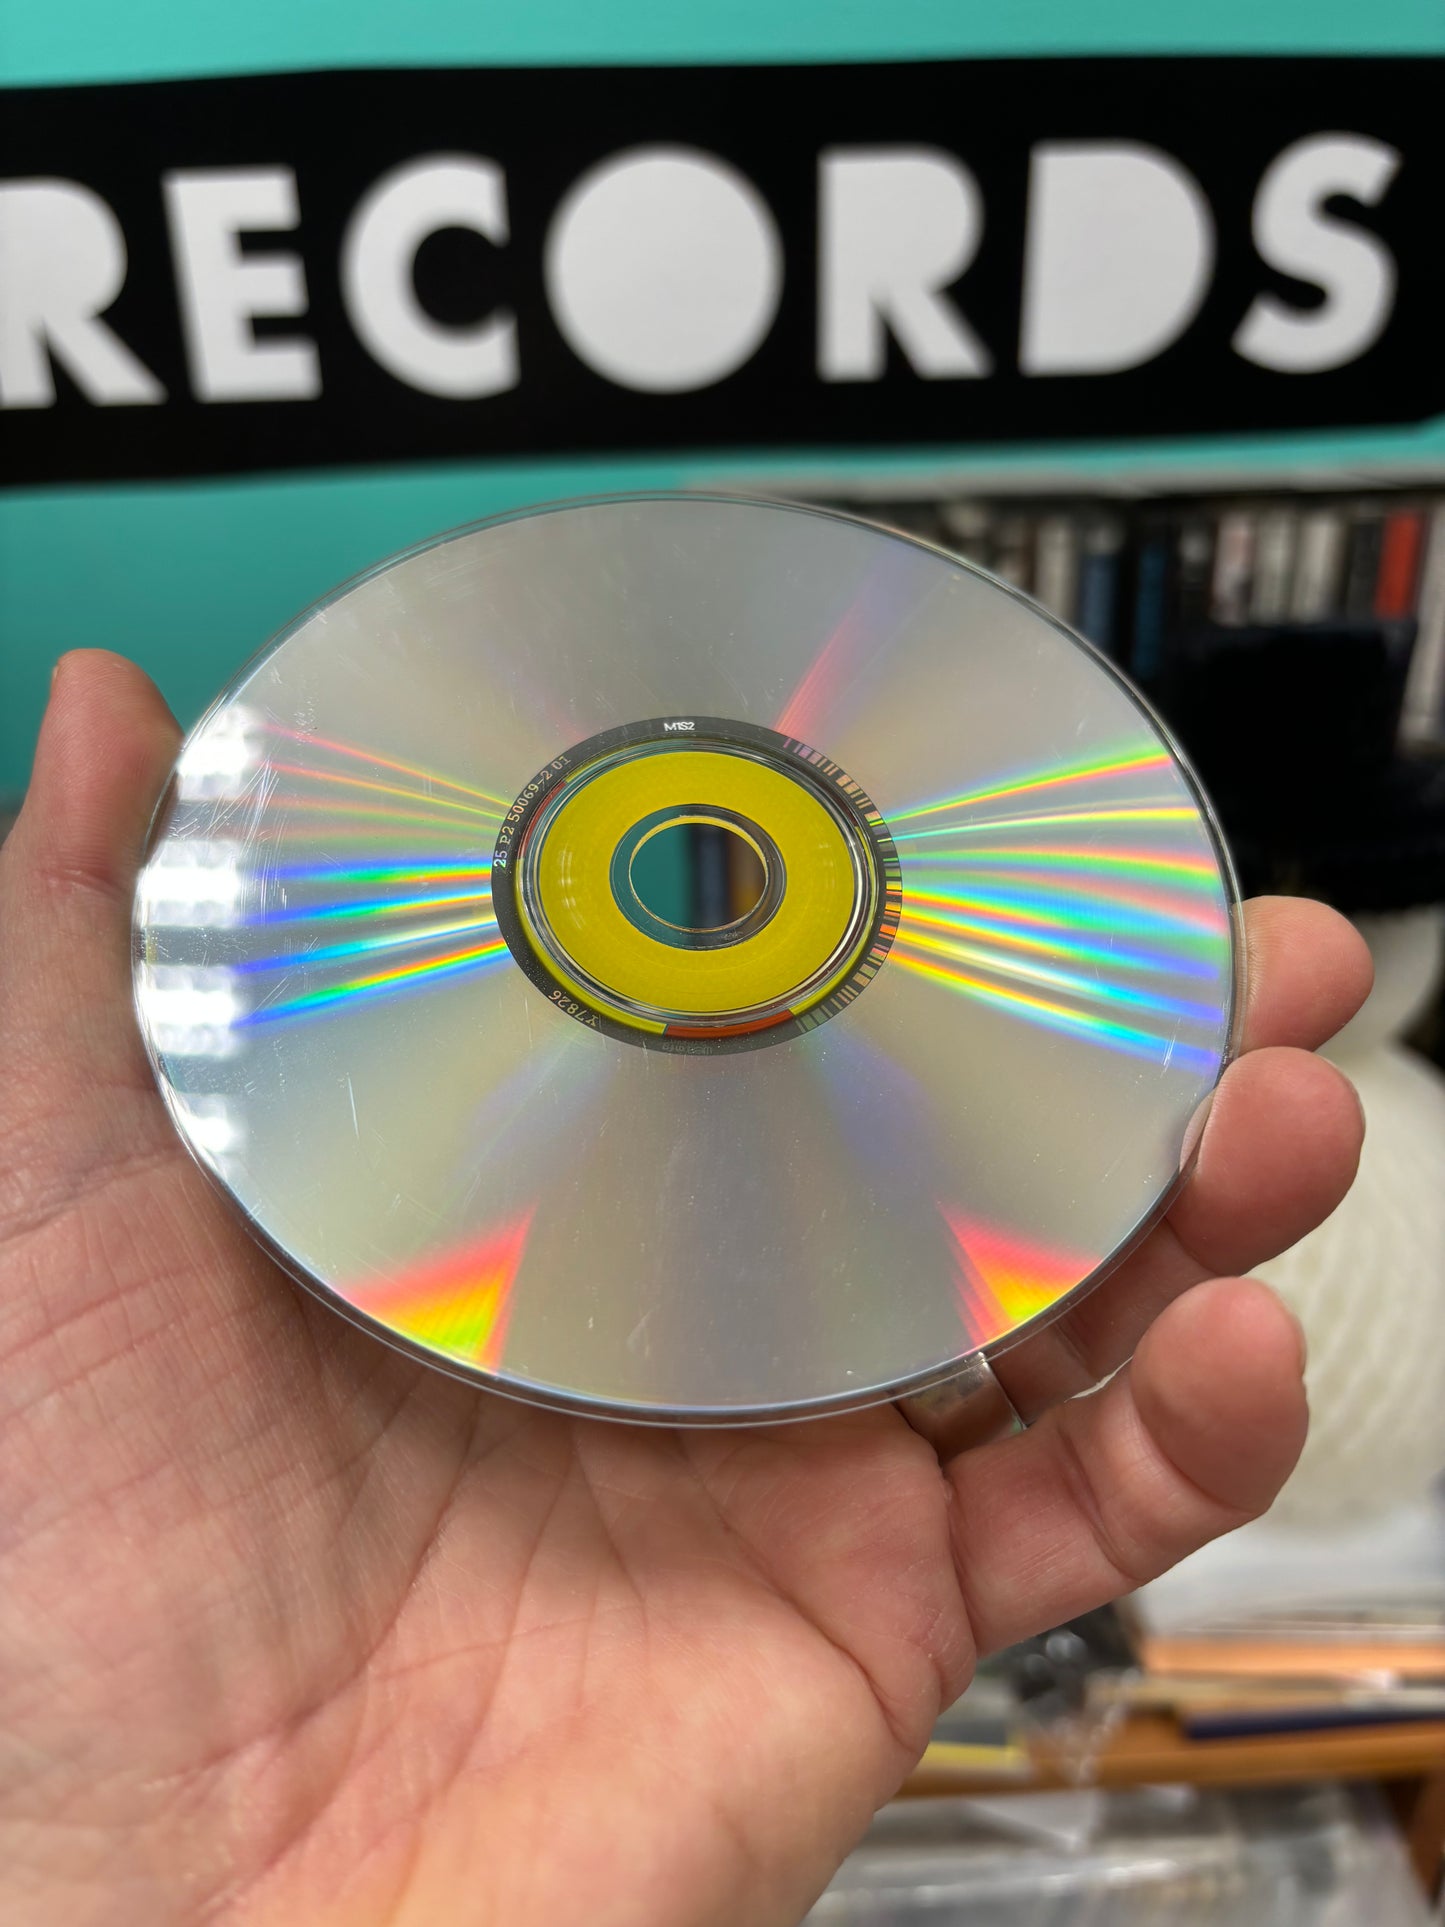 Soundbombing II, CD, OG, US 1999